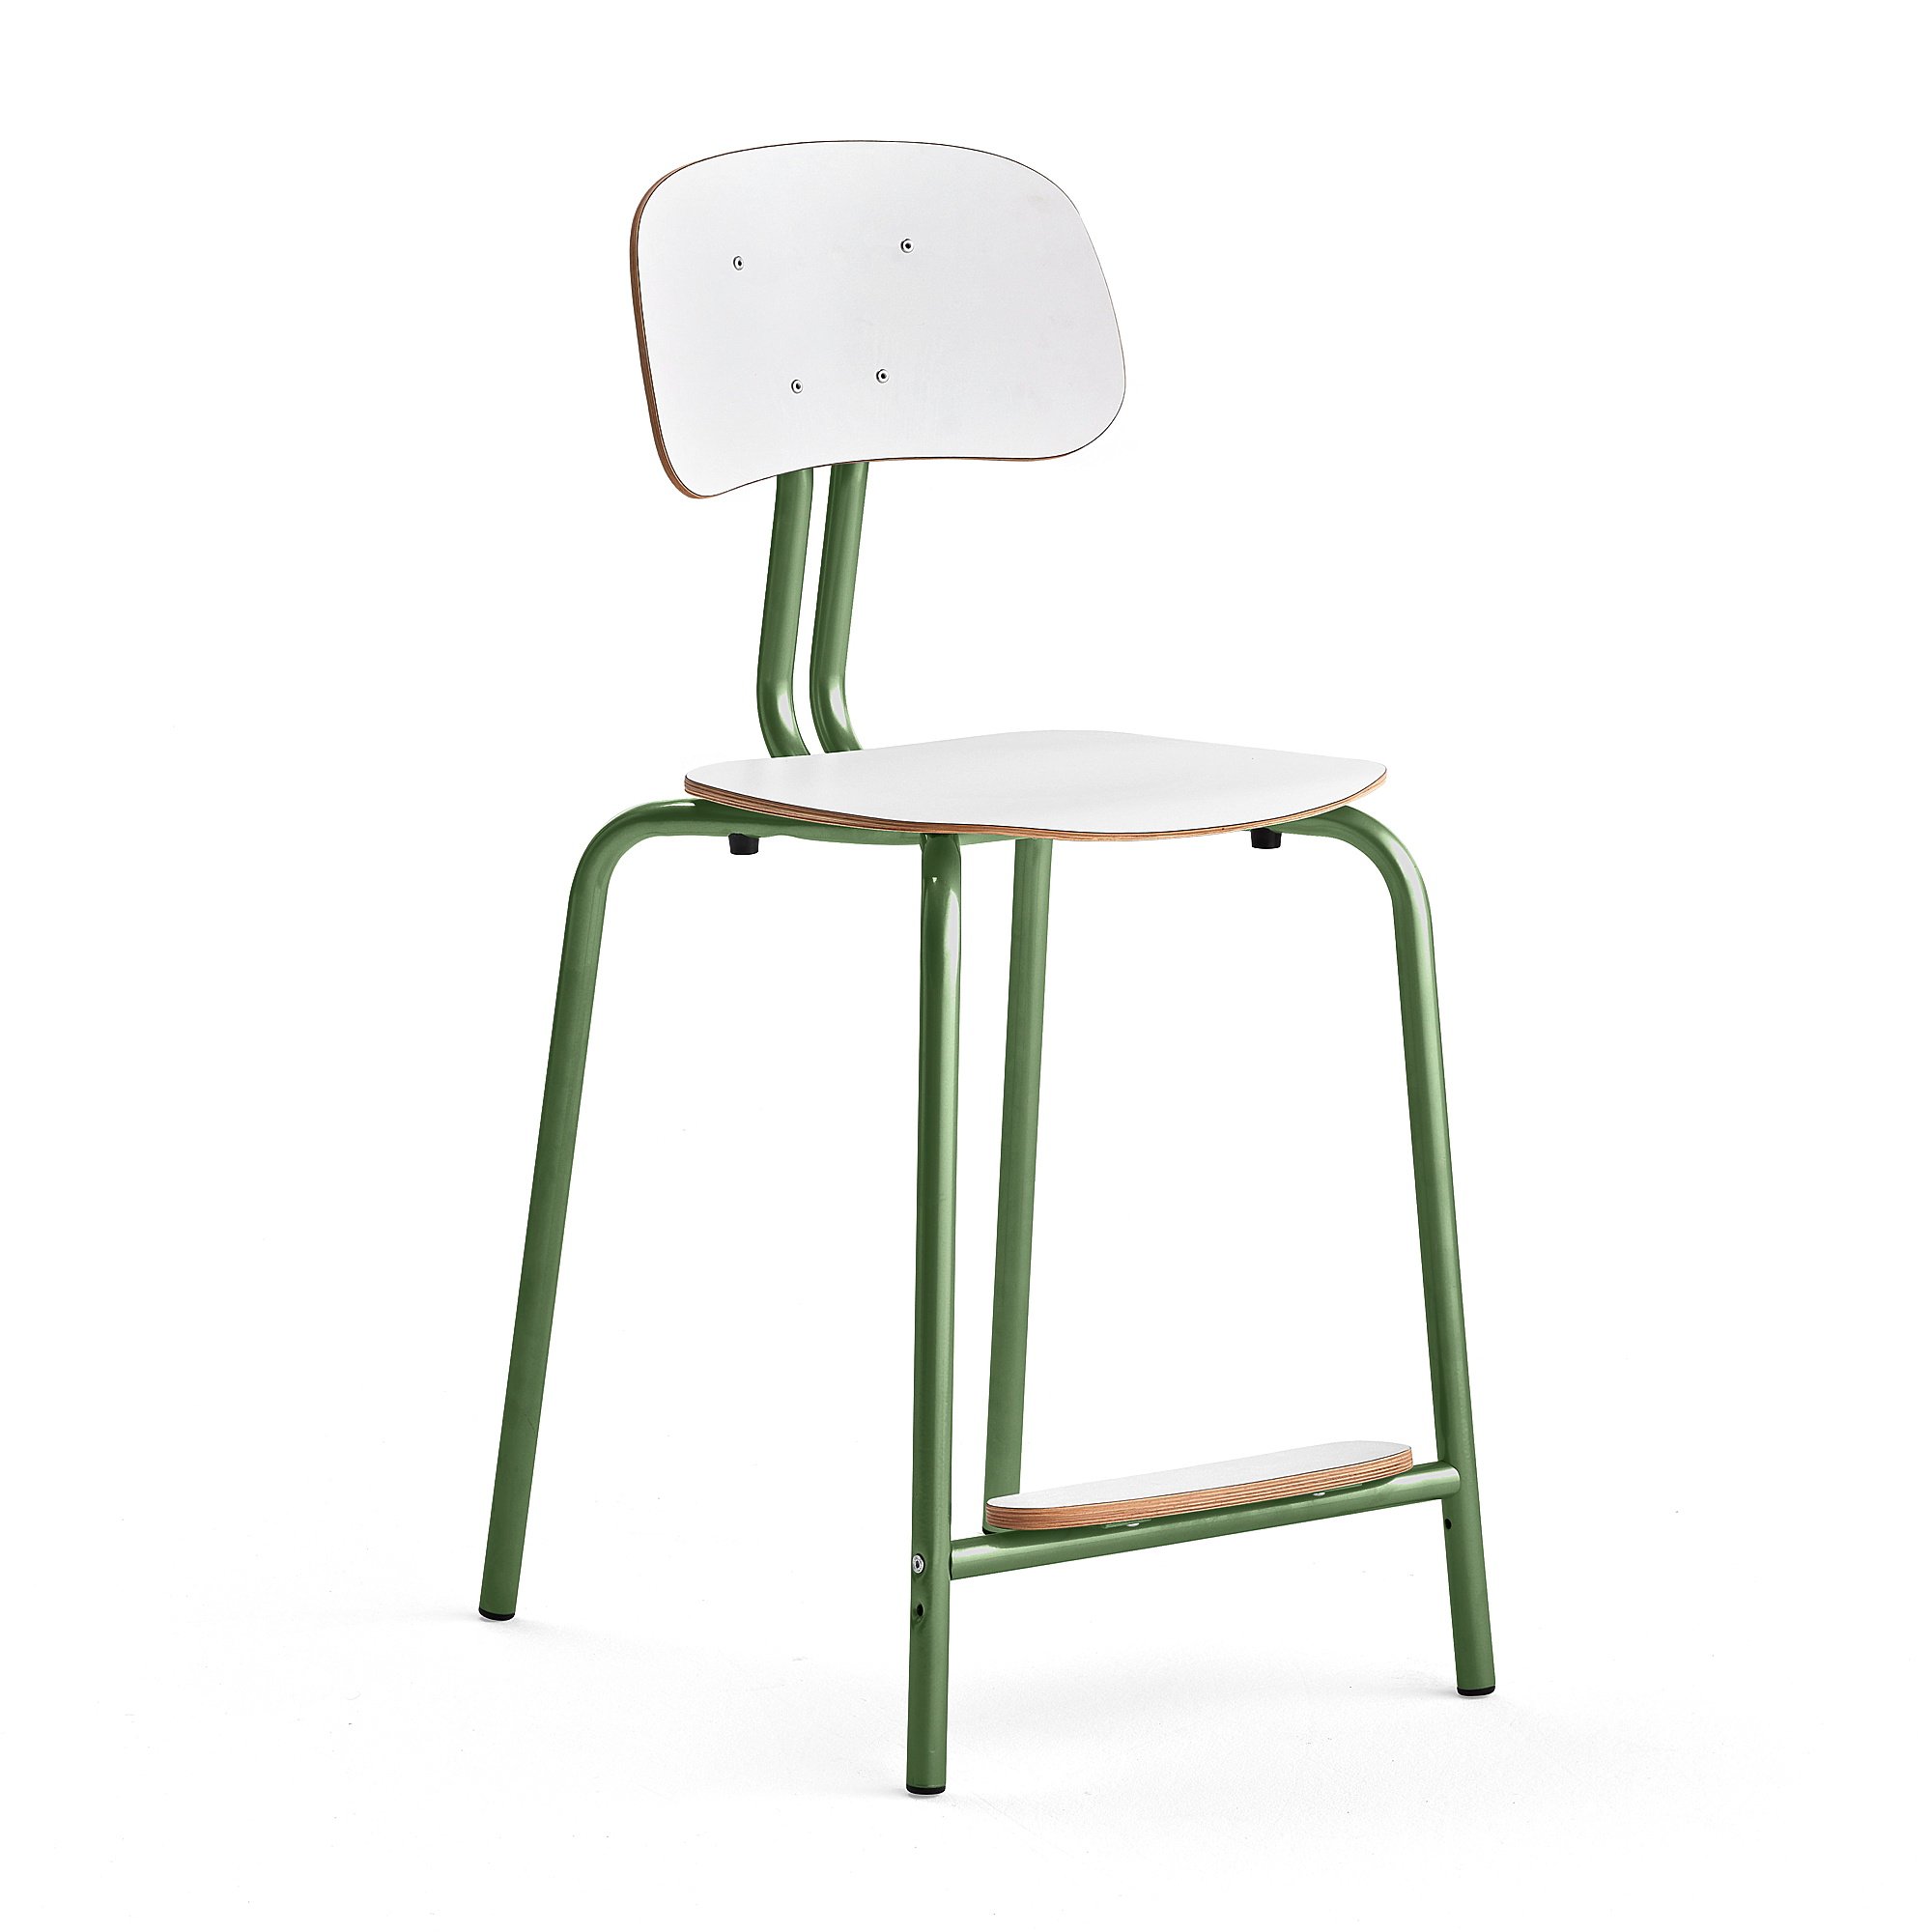 Školní židle YNGVE, 4 nohy, výška 610 mm, zelená/bílá